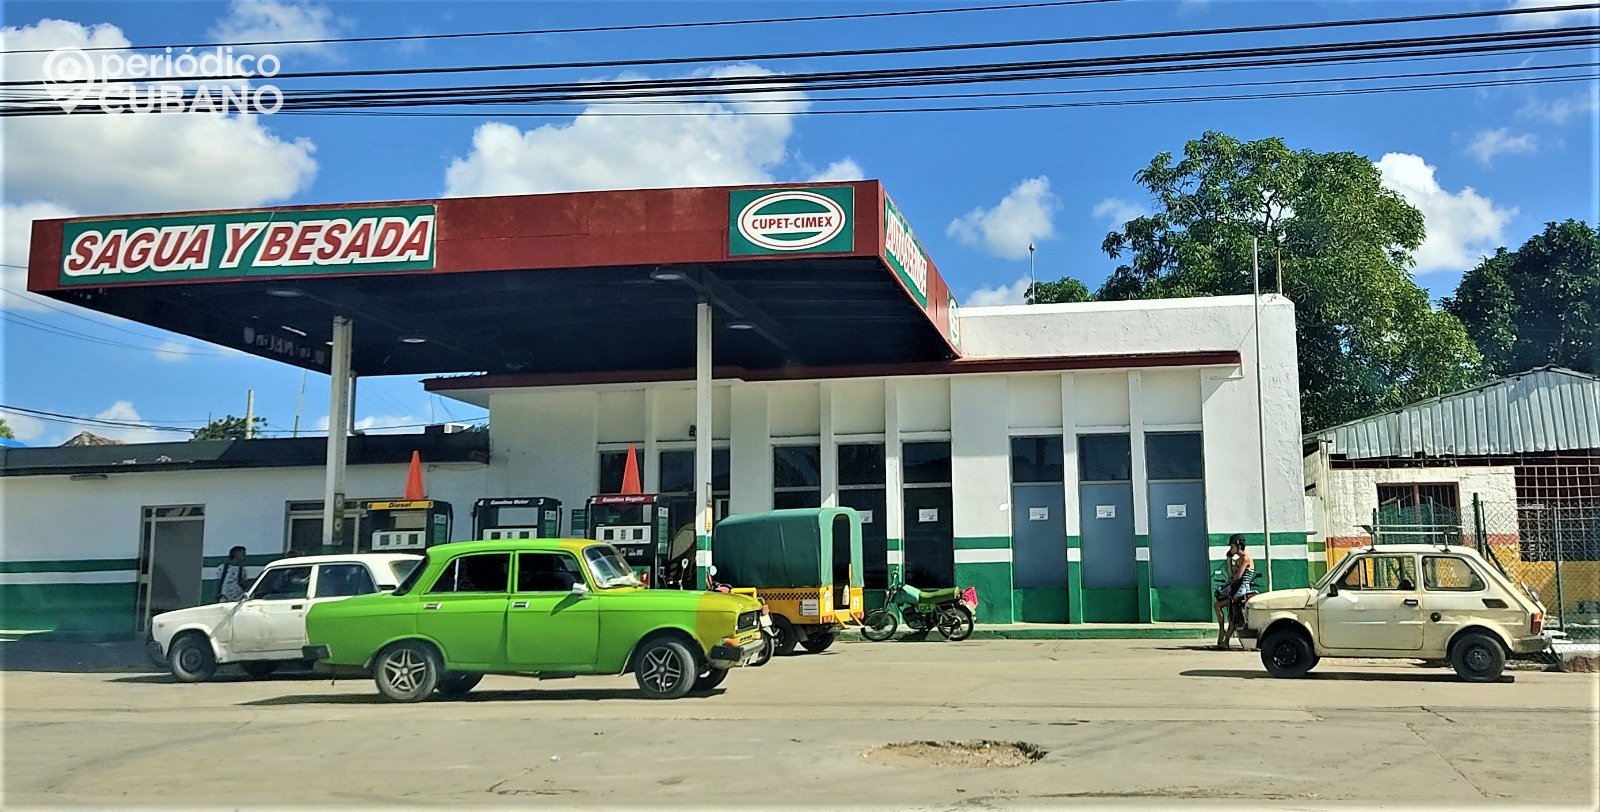 Fincimex lanza las tarjetas de chip recargables para la compra de combustible en Cuba